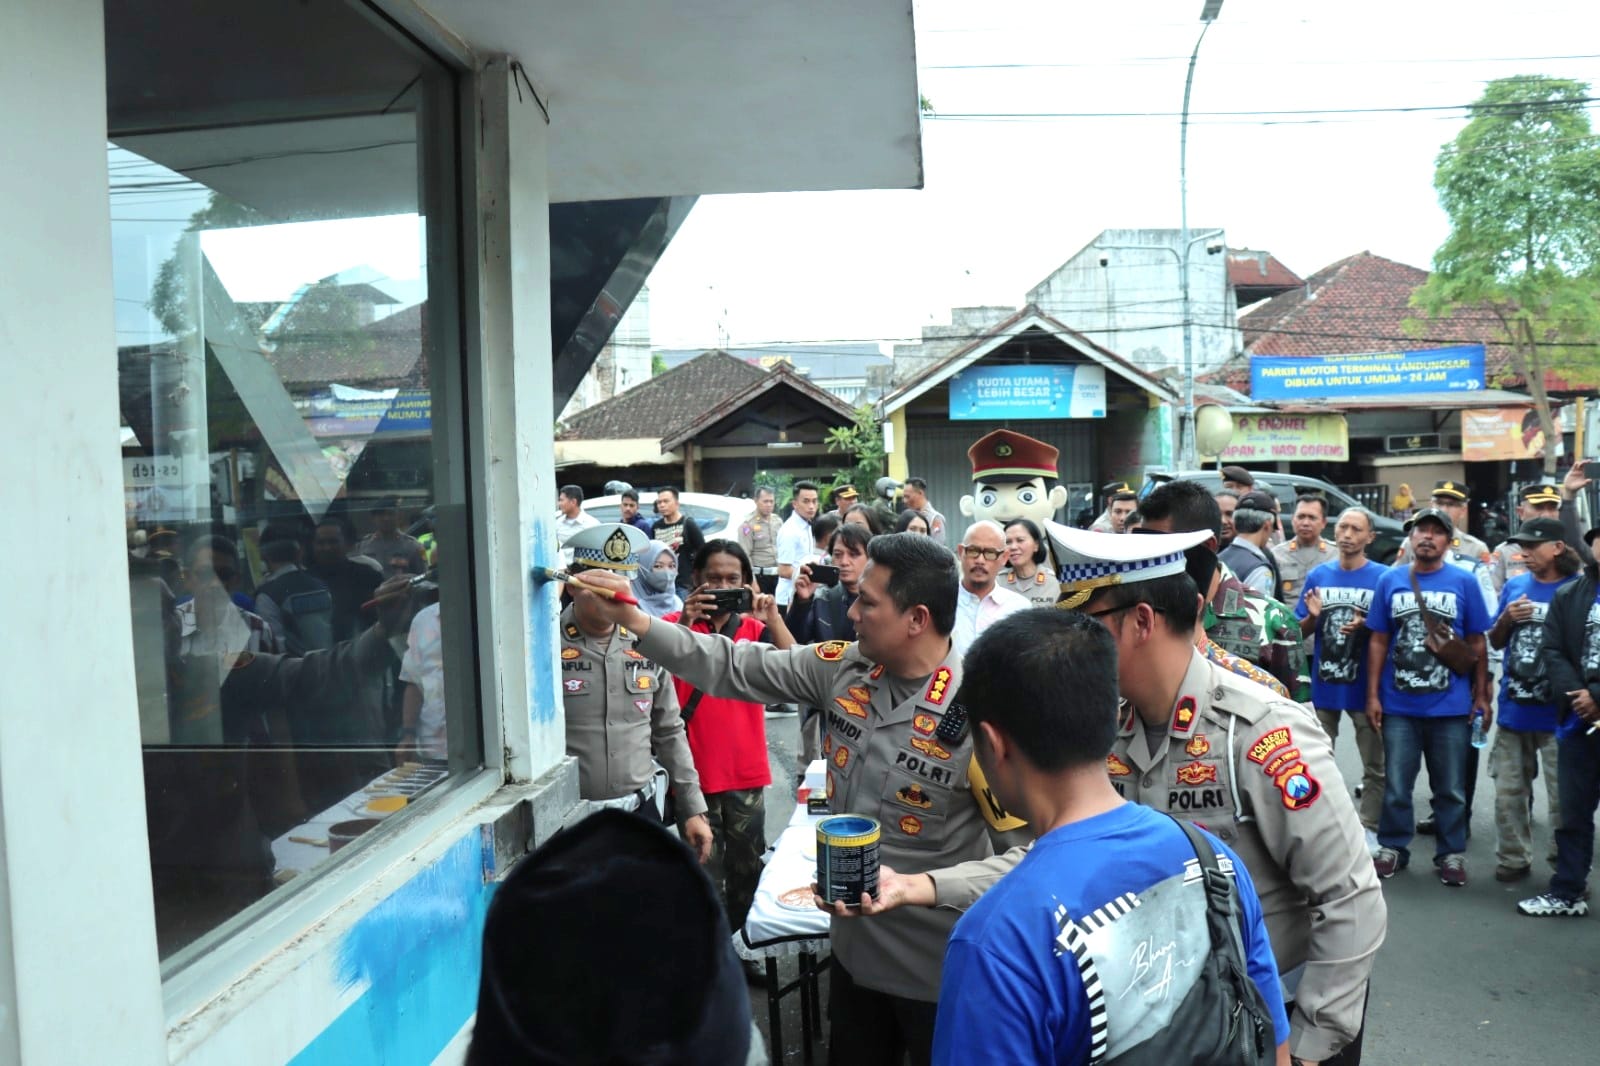 Kapolresta Malang Kota, Kombes Pol Budi Hermanto menorehkan kuas ke dinding Pos Lantas sebagai tanda dimulainya Lomba Mural. (Ist)